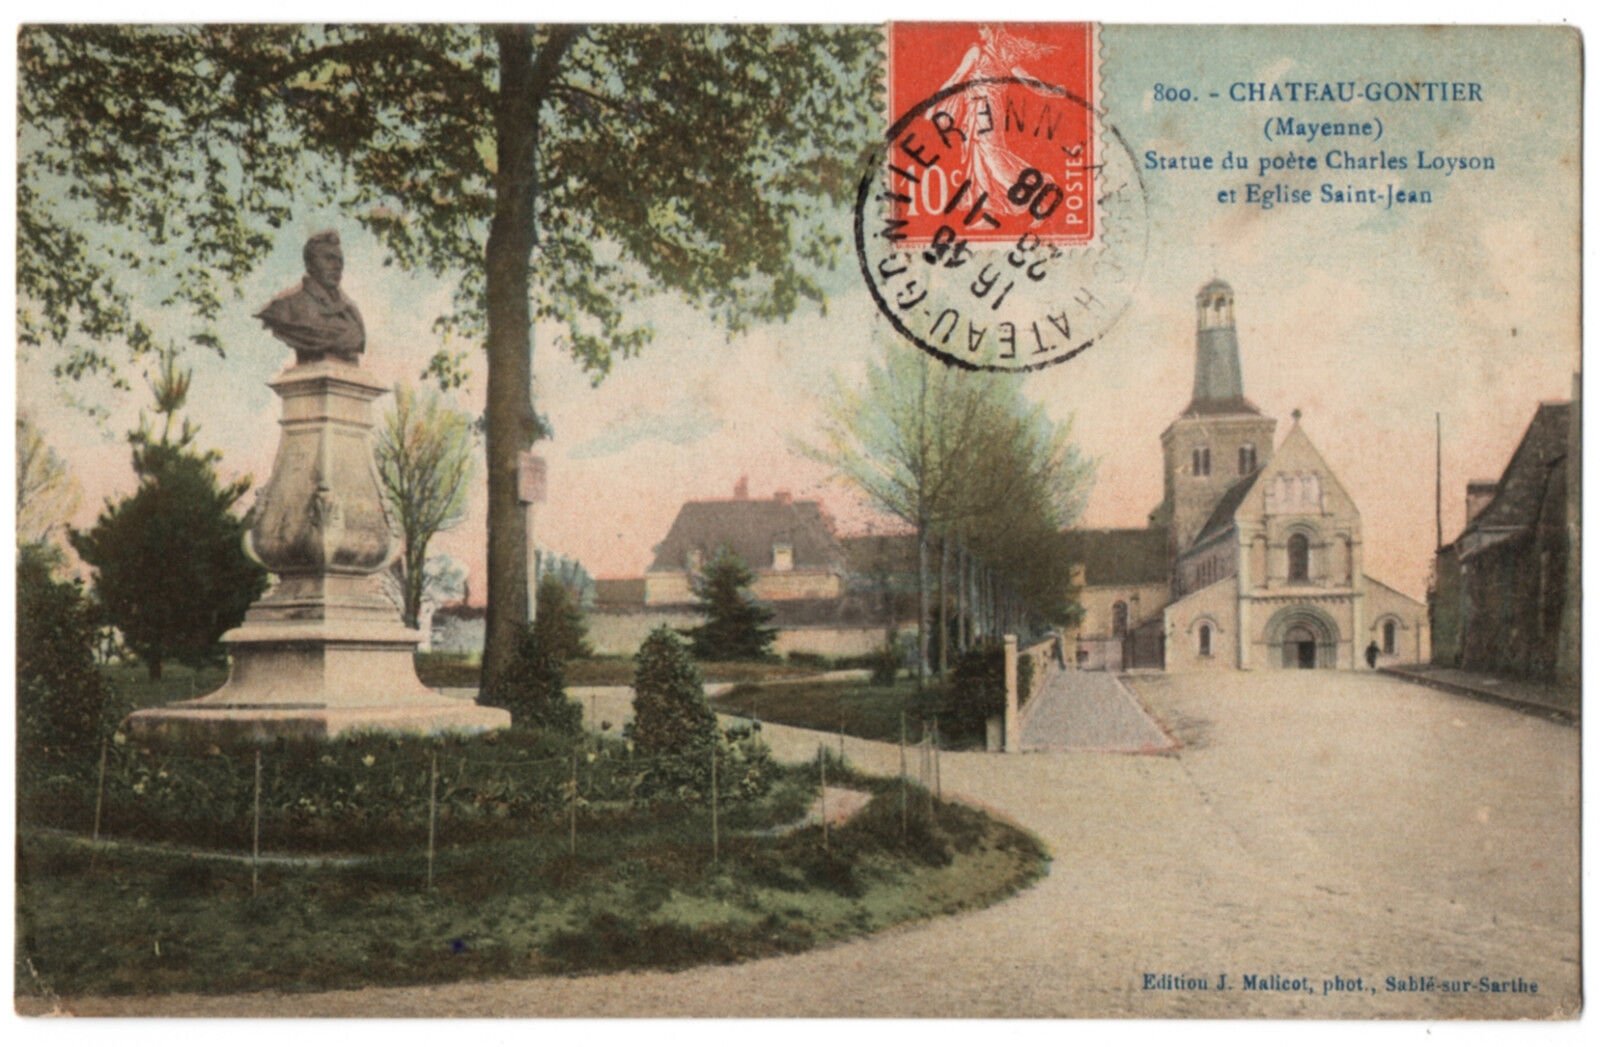 CPA 53 - CHATEAU GONTIER (Mayenne) 800. Statue du Poète Charles Loyson et Eglise